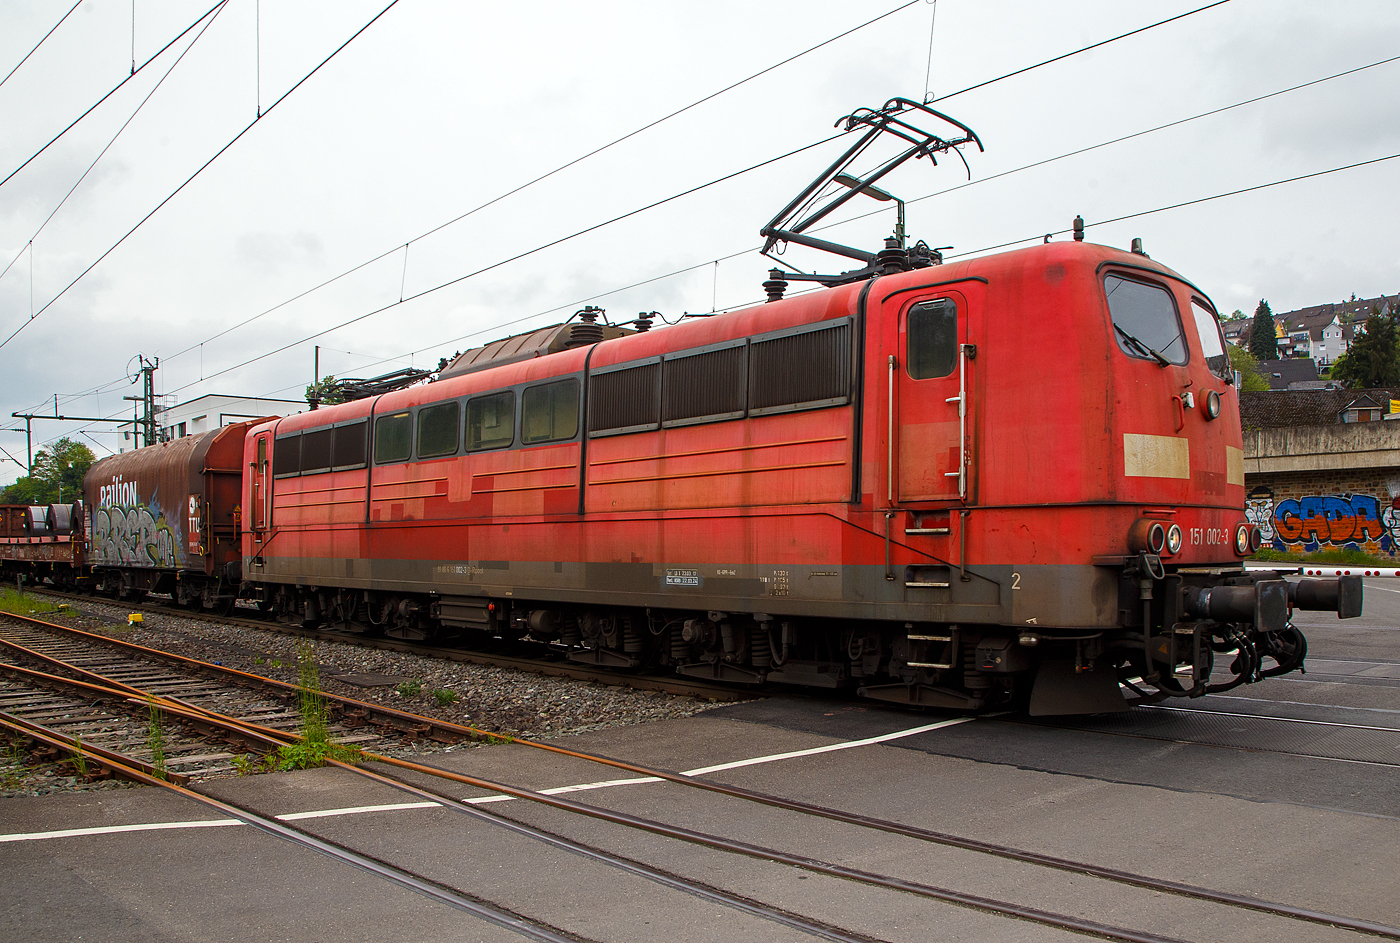 Die an die DB Cargo AG vermietete Railpool 151 002-3 (91 80 6151 002-3 D- Rpool) fährt mit einem gemischten Güterzug am 11.05.2023 durch Niederschelden (hier beim Bü 343 – km 112,183 der Siegstrecke) in Richtung Siegen.

Die Lok wurde 1973 von Krupp in Essen unter der Fabriknummer 5174, der elektrische Teil ist von AEG unter Fabriknummer 8820, gebaut, und an die Deutsche Bundesbahn geliefert. Bis zum 31.12.2016 gehörte sie zur DB Cargo AG. Zum 01.01.2017 wurden je 100 sechsachsige elektrische Altbau-Lokomotiven der Baureihen 151 und 155 an ein Konsortium aus dem Lokvermieter Railpool verkauft. Die DB Cargo mietet daraufhin 100 Loks von Railpool wieder an. Die anderen Maschinen werden dem freien Markt angeboten.

Diese sechsachsigen Loks (Co’Co’) sind immer noch starke Zugpferde, und so manche moderne Lok hat nicht diese Leistungsfähigkeit. Mit einer Stundenleistung von 6.288 kW (8.550 PS) bei 92 km/h und einer Anfahrzugkraft von 395 kN können diese Loks 3.000 t Züge bei 3 ‰ Steigung noch mit einer Dauergeschwindigkeit 75 km/h ziehen, bei 2.000 t Zügen sind es 100 km/h.